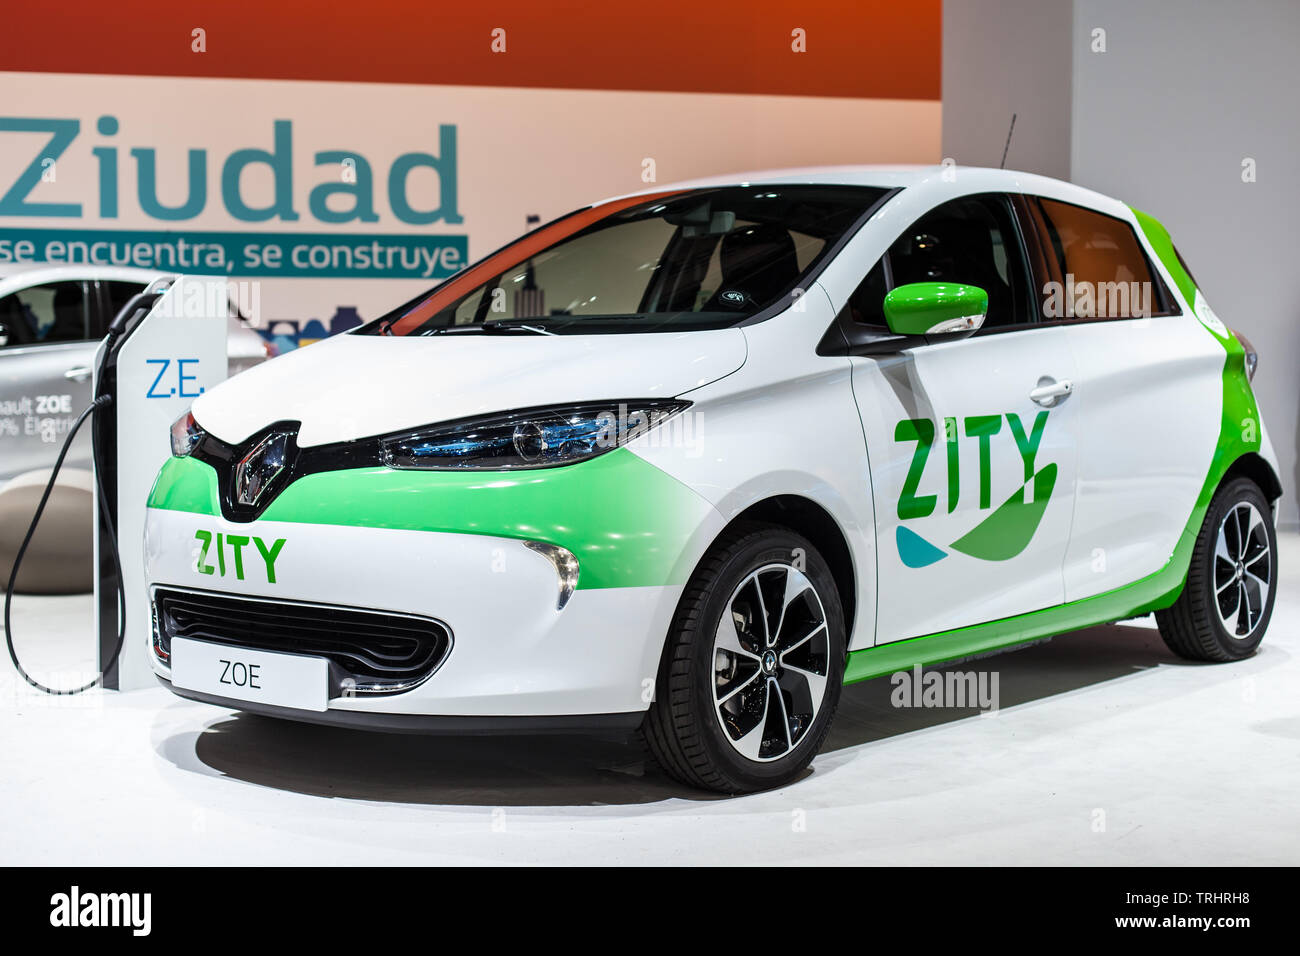 Barcelone, Espagne - 19 mai 2019 : Renault Zoe de la société d'autopartage Zity présentée à Barcelone de l'automobile 2019. Banque D'Images